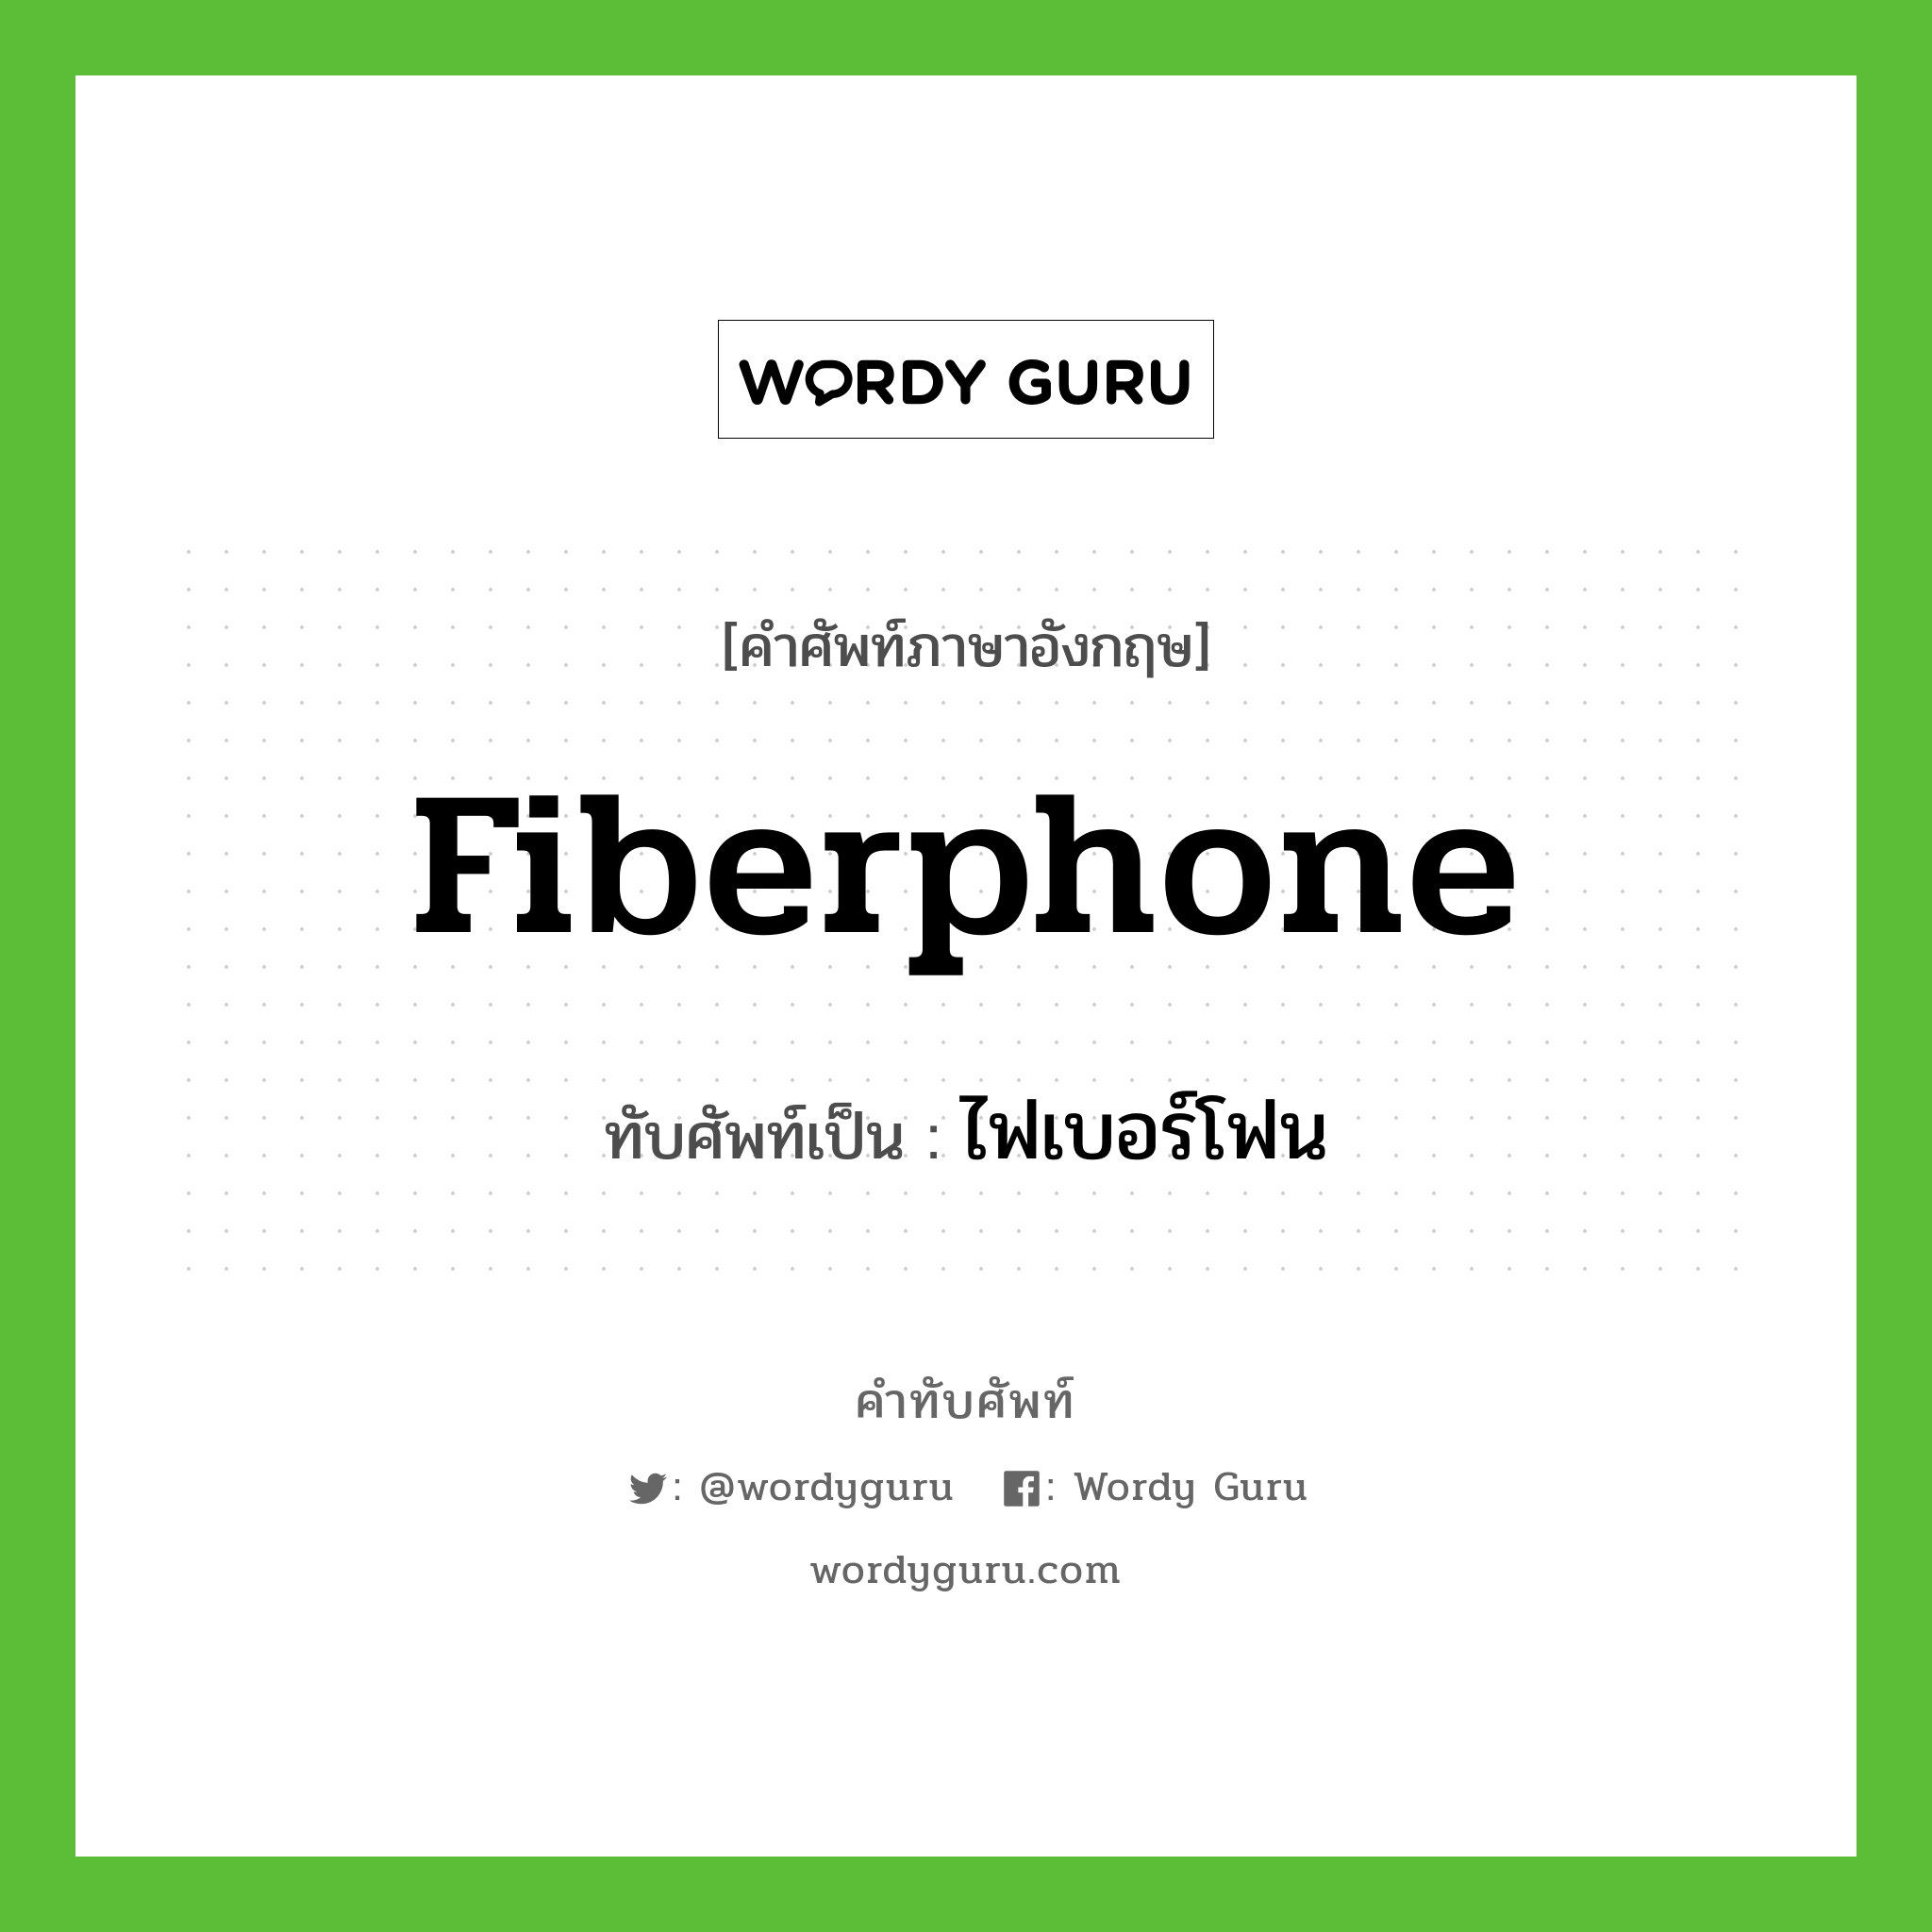 fiberphone เขียนเป็นคำไทยว่าอะไร?, คำศัพท์ภาษาอังกฤษ fiberphone ทับศัพท์เป็น ไฟเบอร์โฟน